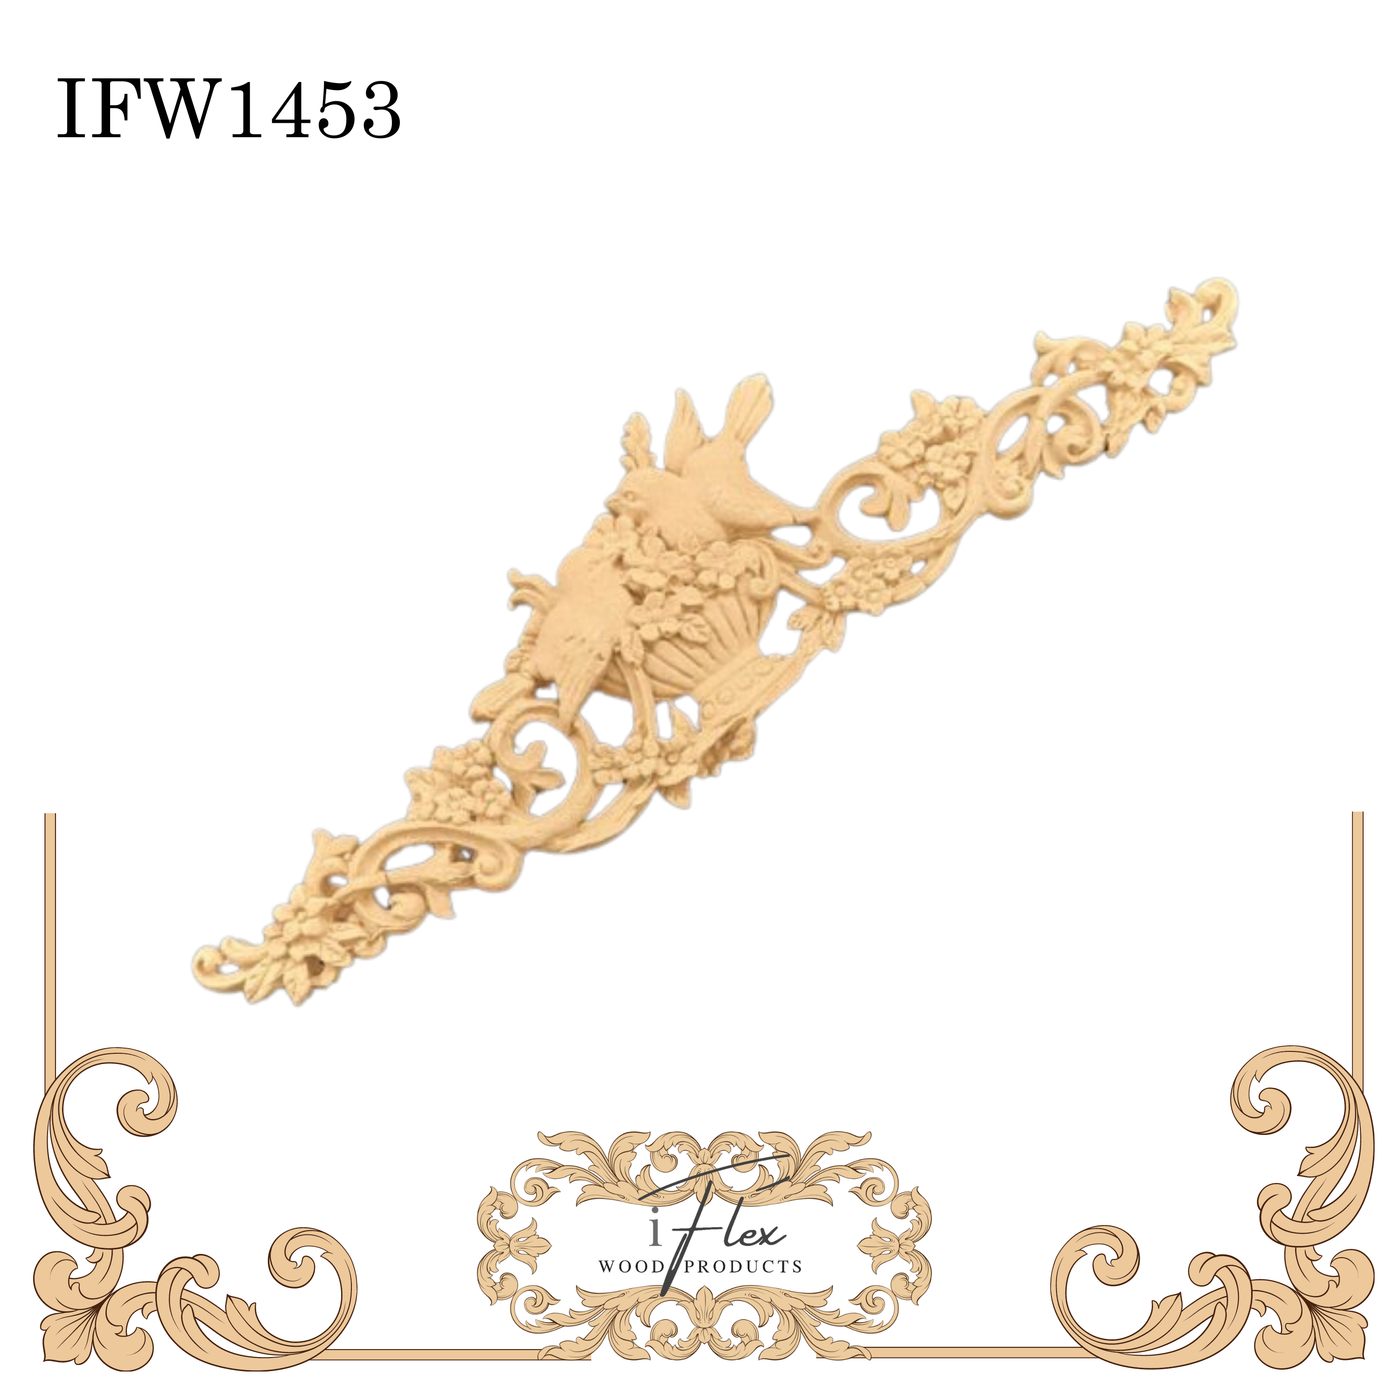 IFW 1453